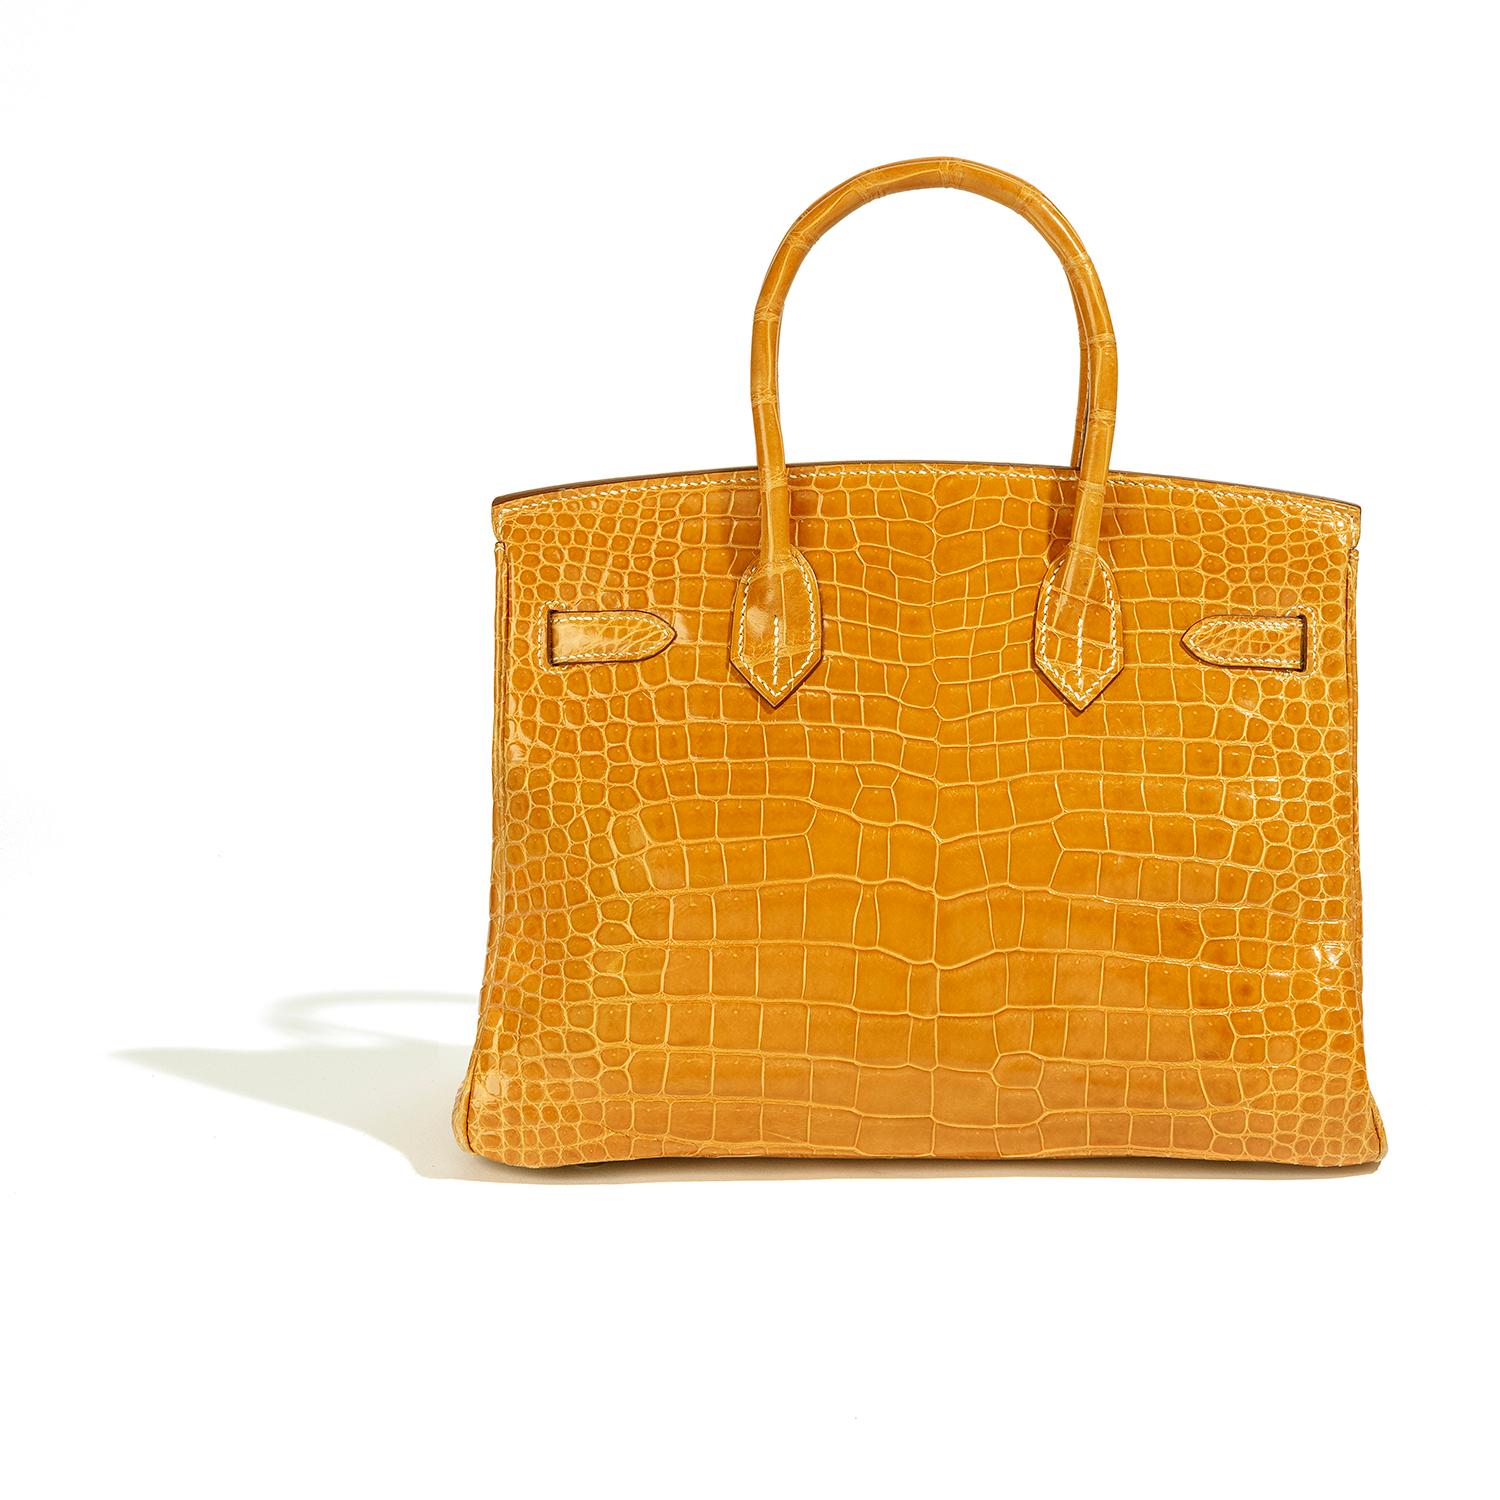 Diese exquisite Hermès Tasche ist ein wahres Kunstwerk, gefertigt aus feinstem gelbem Leder und verziert mit atemberaubenden diamantbesetzten, weißgoldenen Beschlägen. Die goldene Diamantschließe ist ein echter Hingucker: Sie wiegt 106,68 g